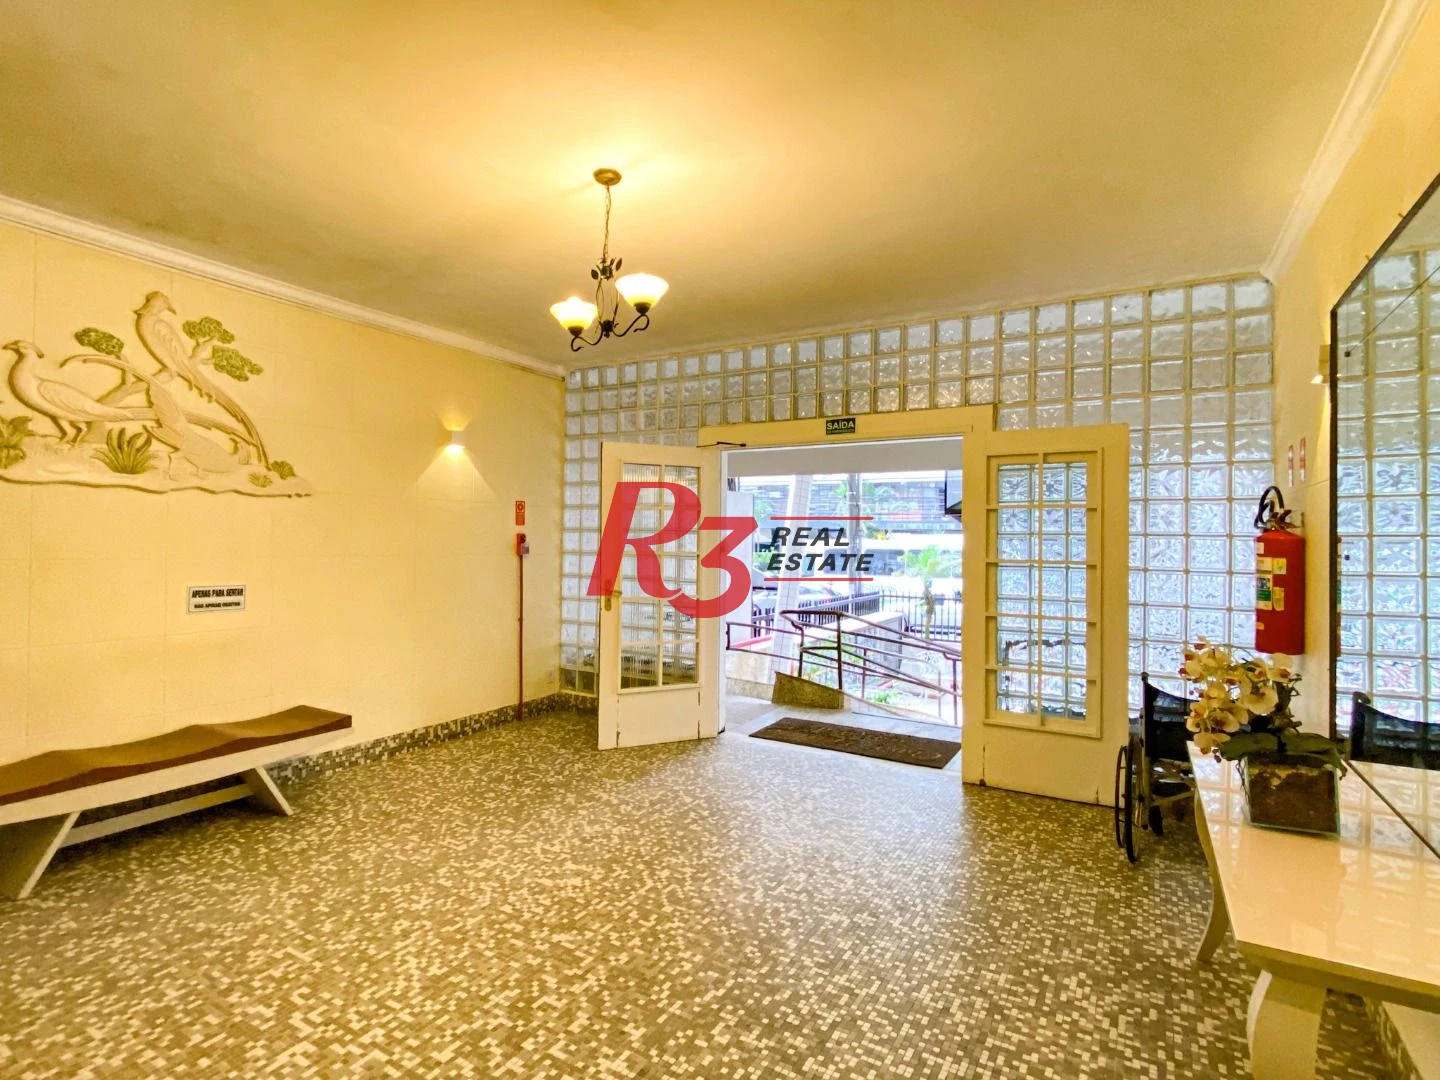 Apartamento com 1 dormitório à venda, 56 m² por R$ 369.000,00 - Boqueirão - Santos/SP